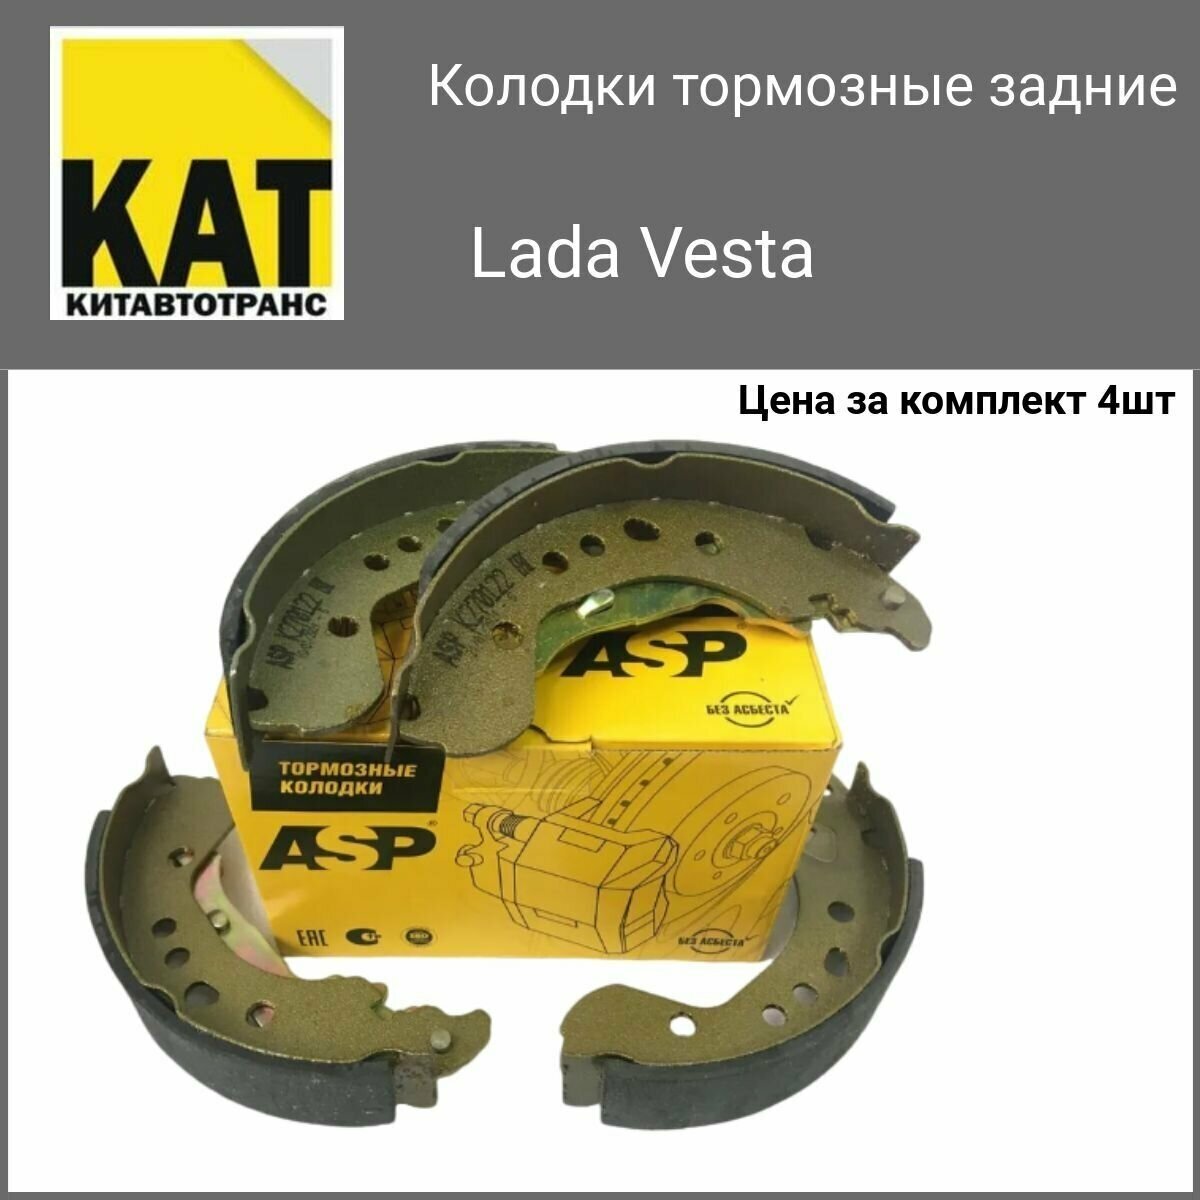 Колодки тормозные задние барабанные Лада Веста (Lada Vesta) ASP комплект 4шт